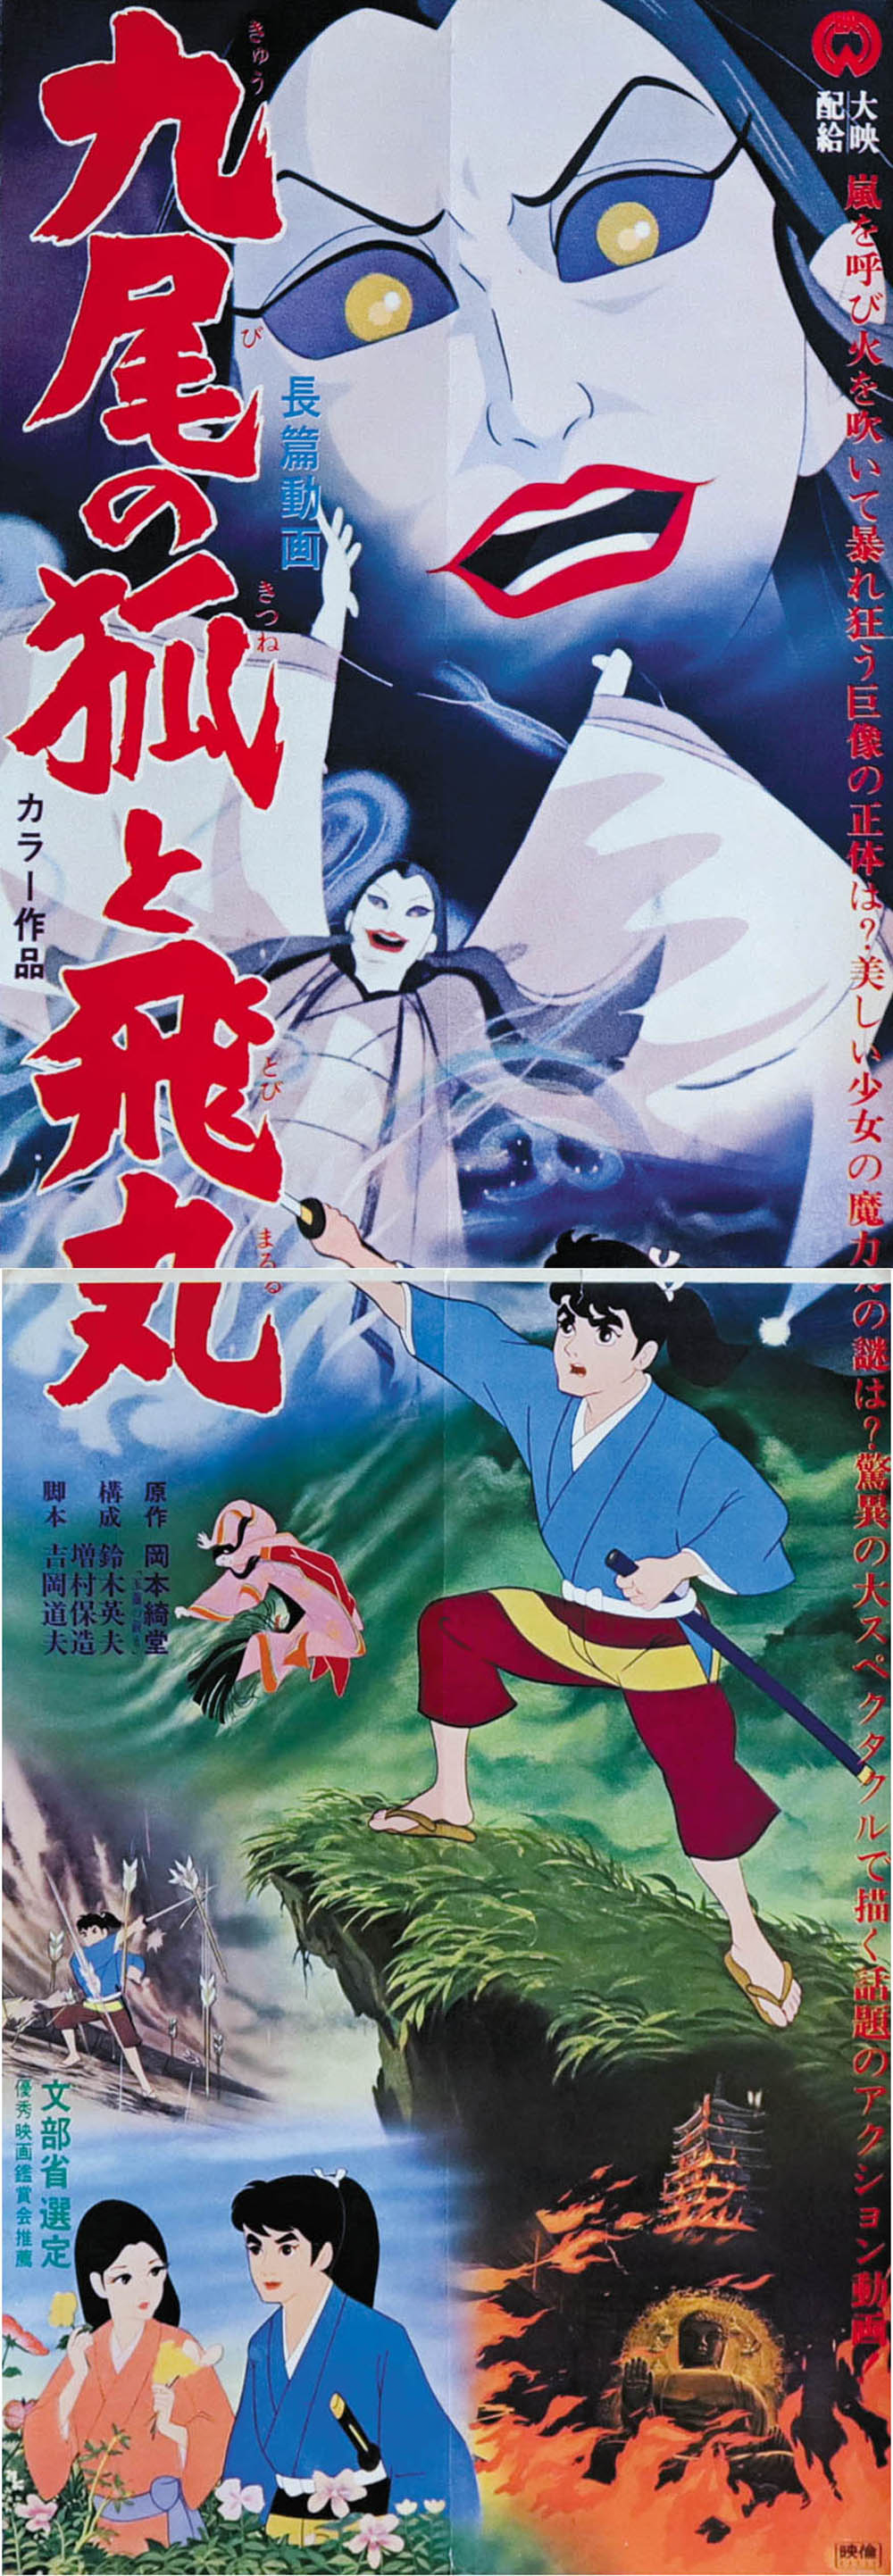 Kyubi-poster-68.jpg